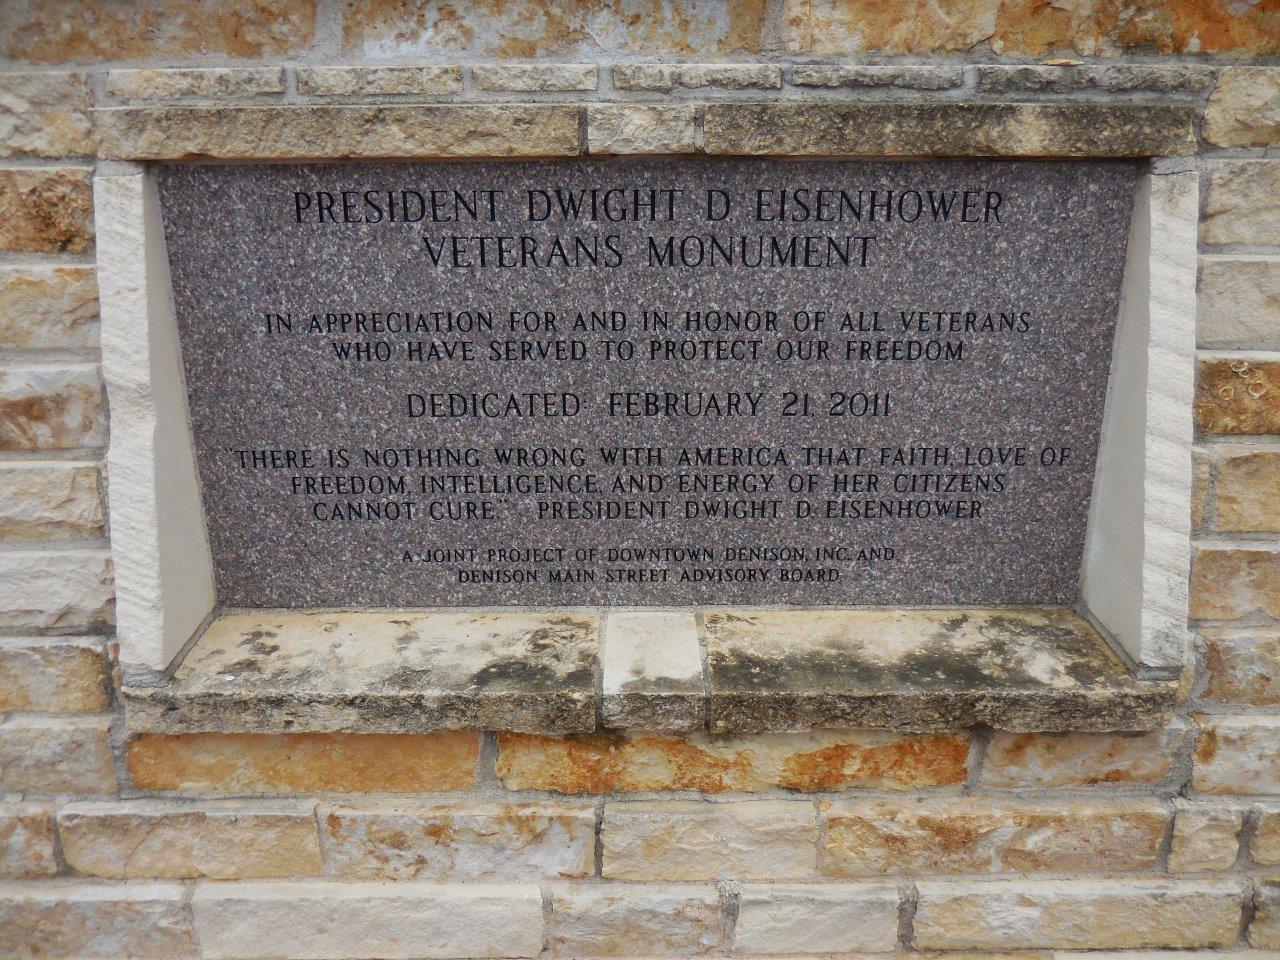 Dwight Eisenhower veterans monument